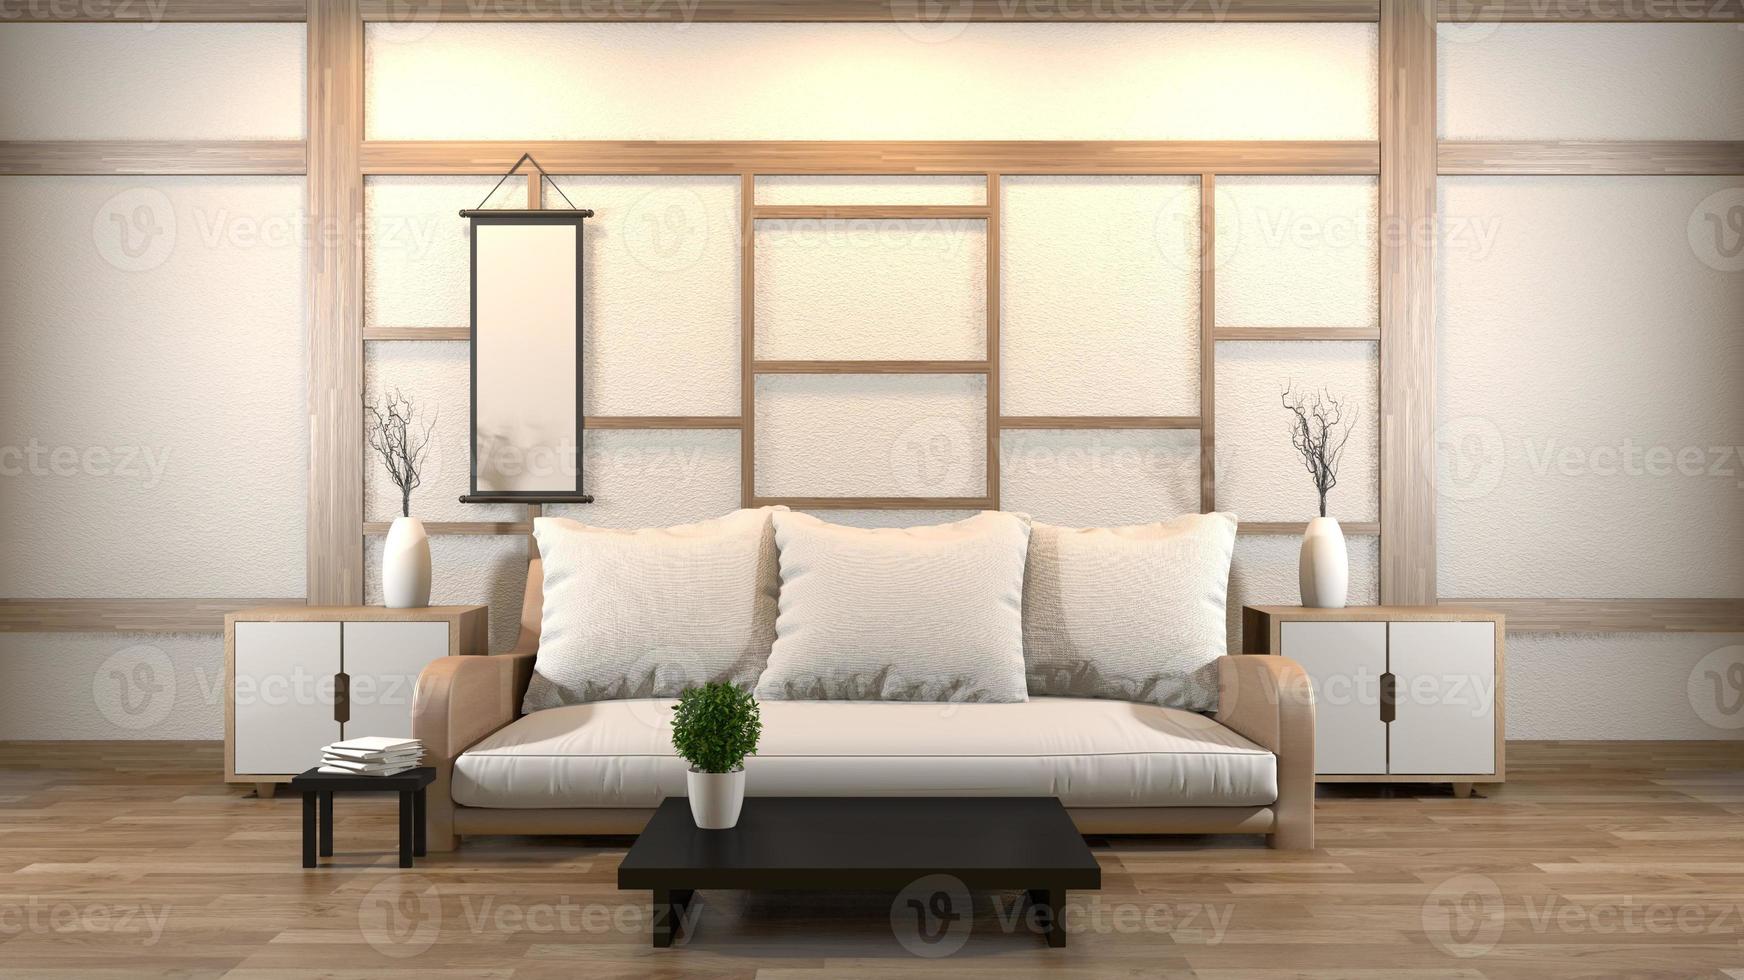 design d'intérieur salon zen avec table basse, oreiller, cadre, lampe sur parquet. rendu 3d photo